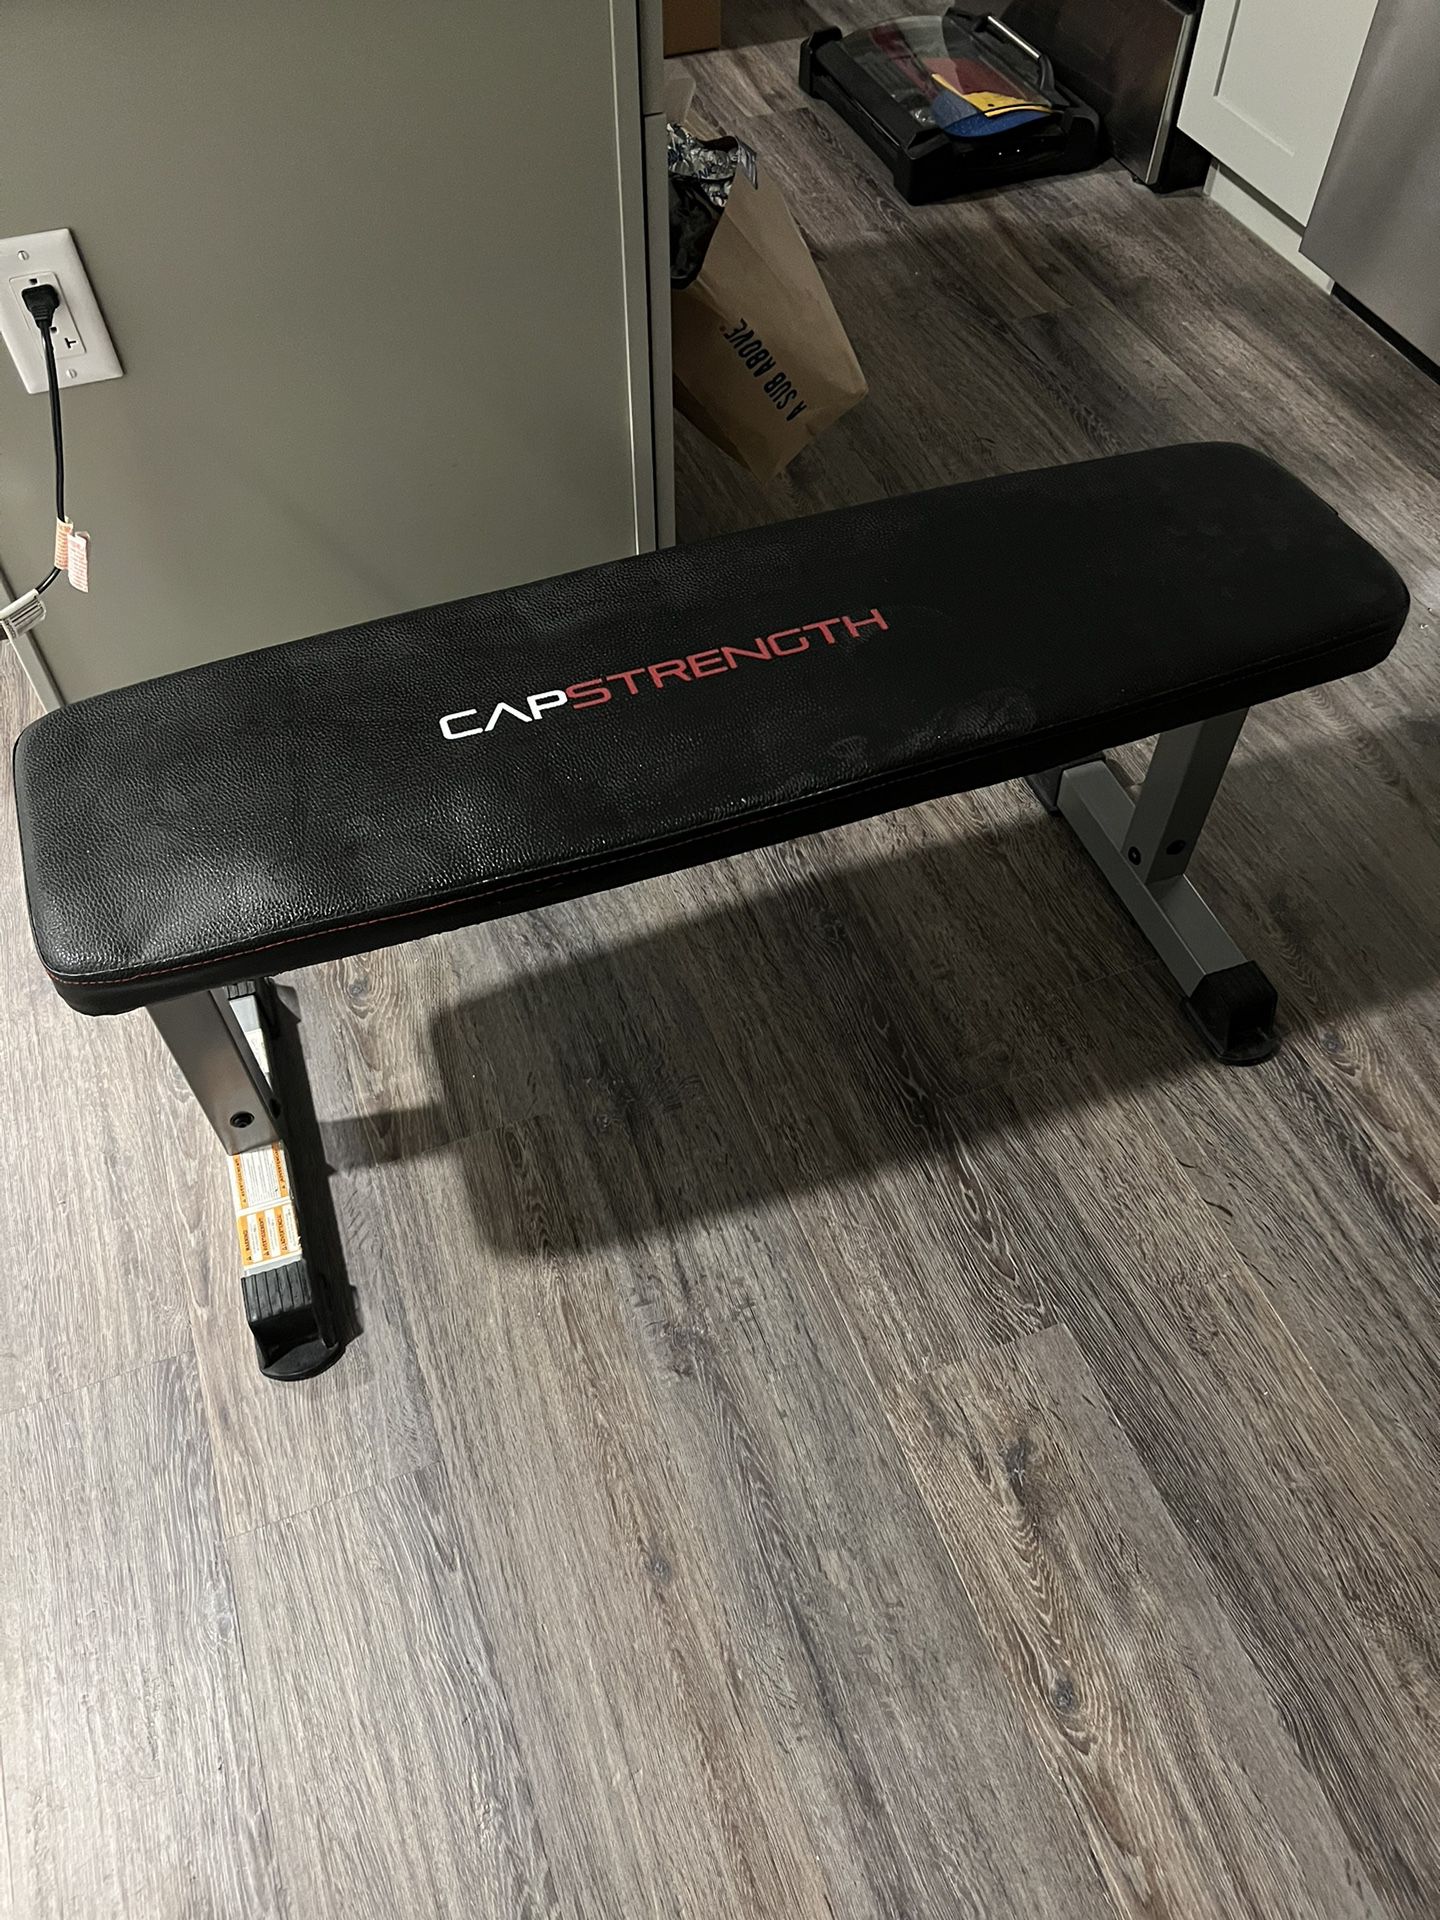 Cap Strength Weight Bench